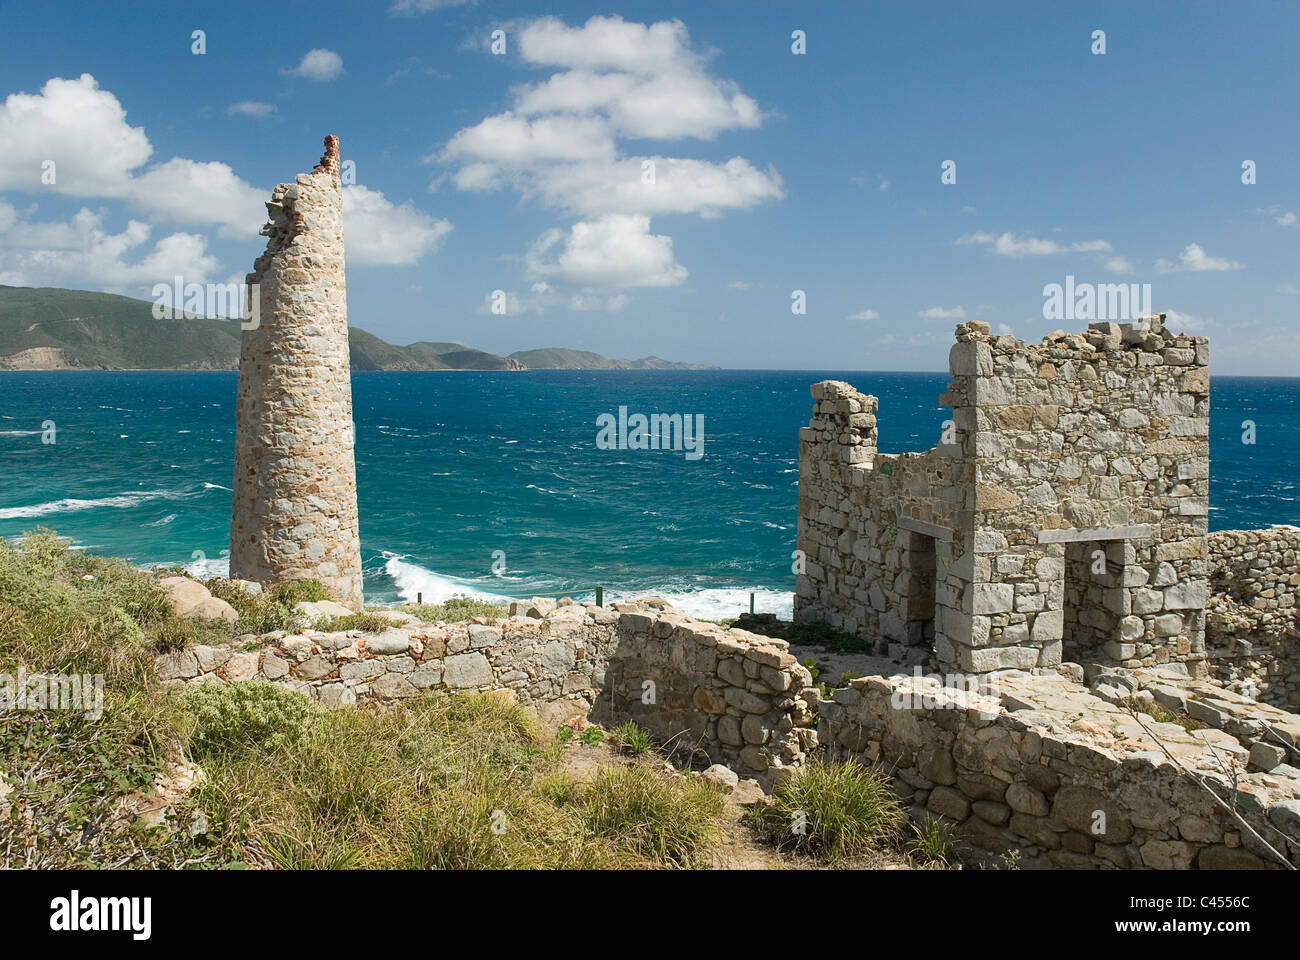 Caraibi, Leeward Islands, Isole Vergini Britanniche - Virgin Gorda, vecchia miniera di rame, Vista del vecchio rudere a lato mare Foto Stock